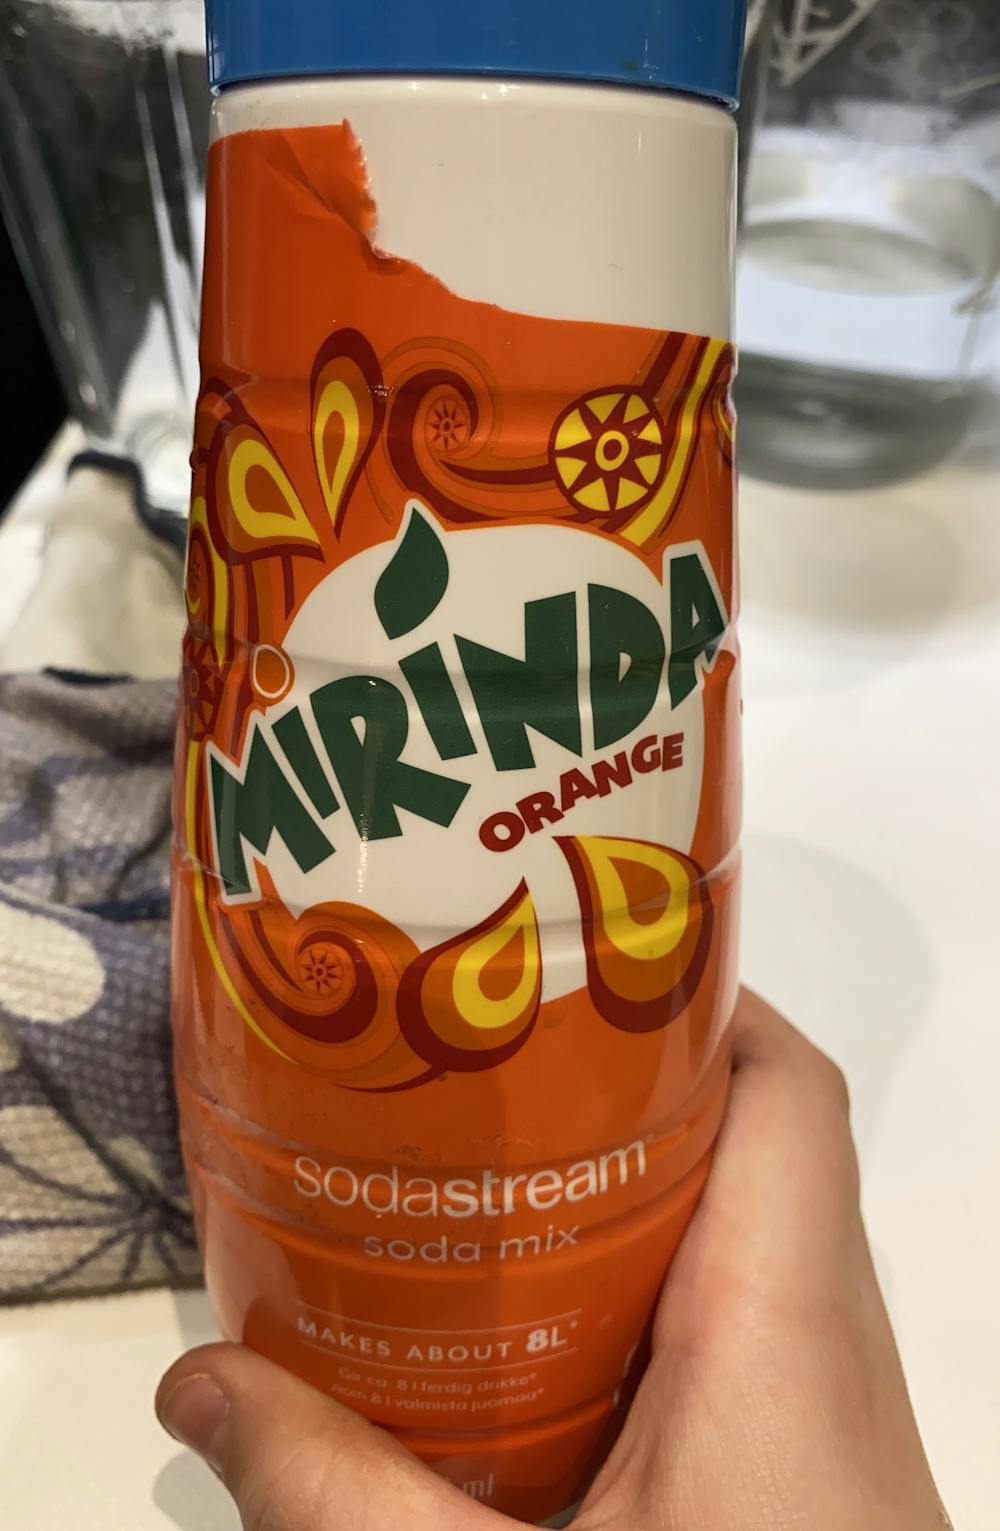 Mirinda orange, Sodastream